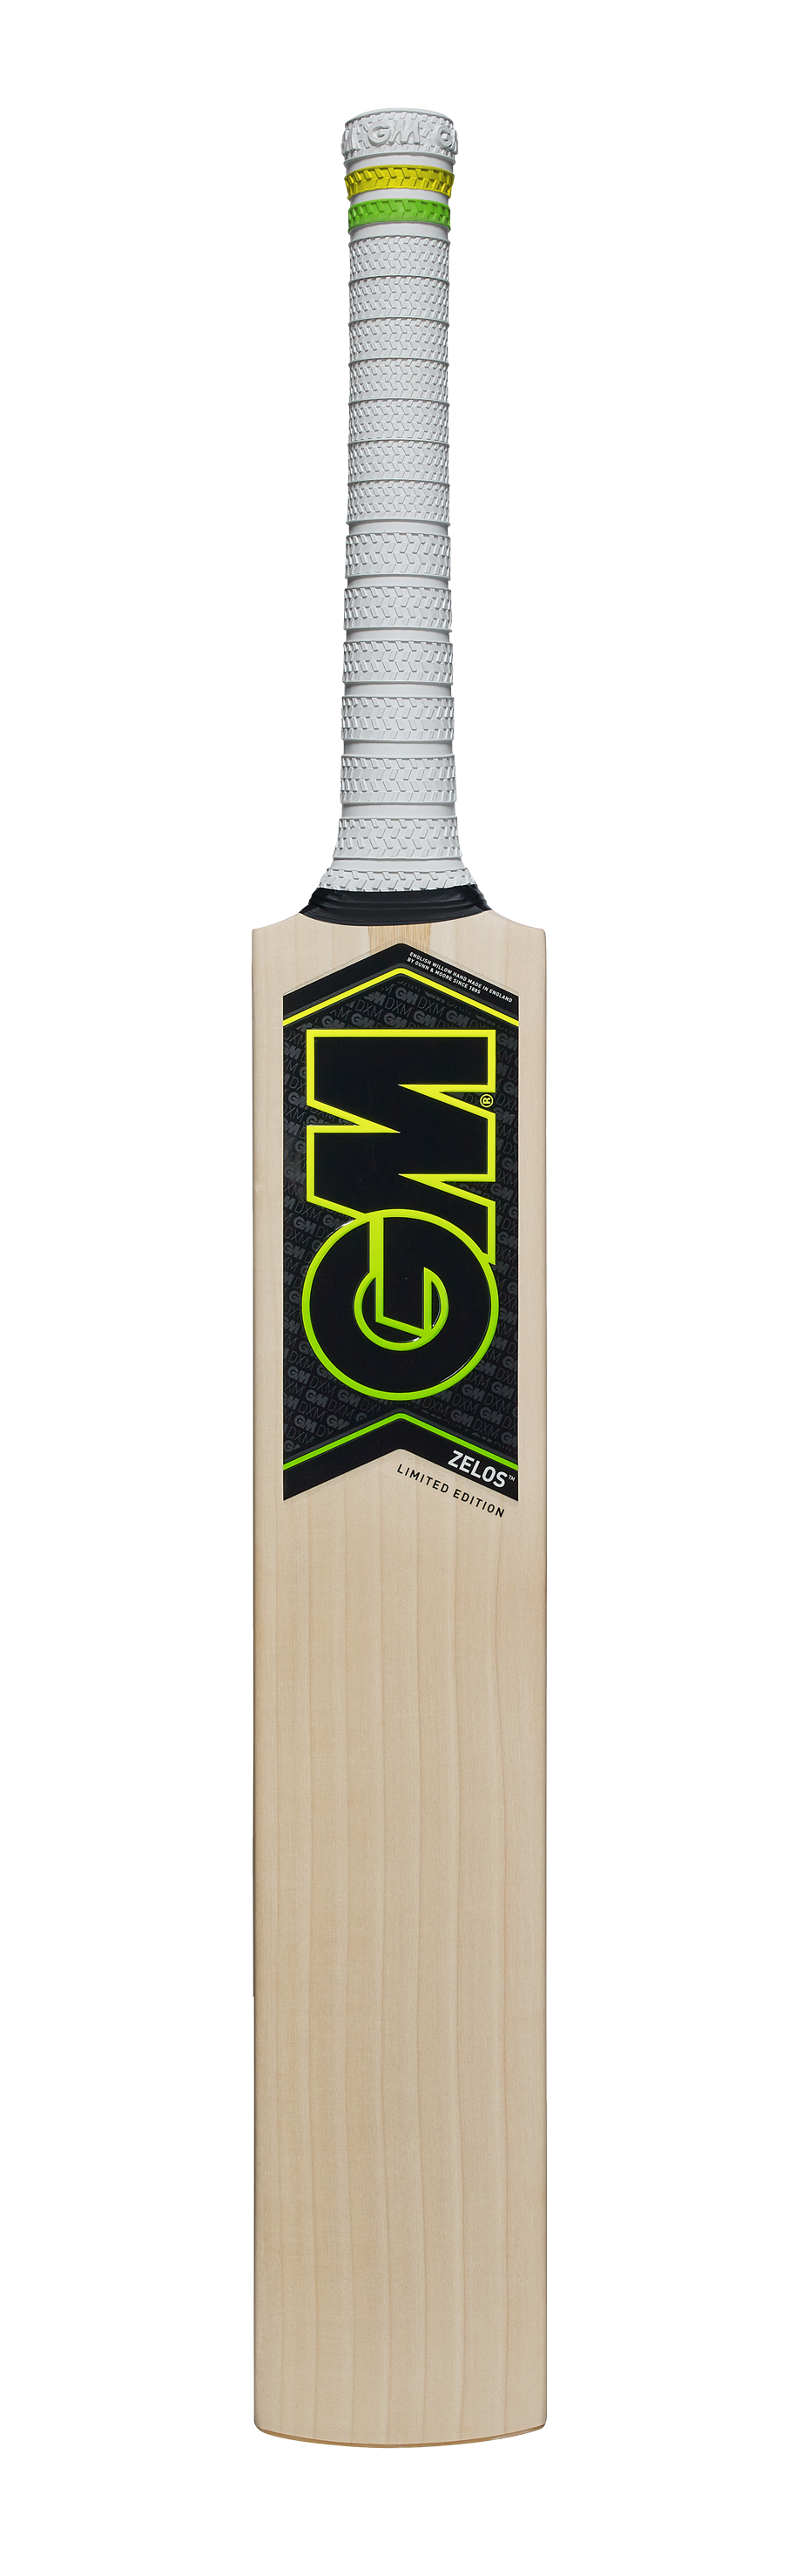 GM Zelos Cricket Bat 2018